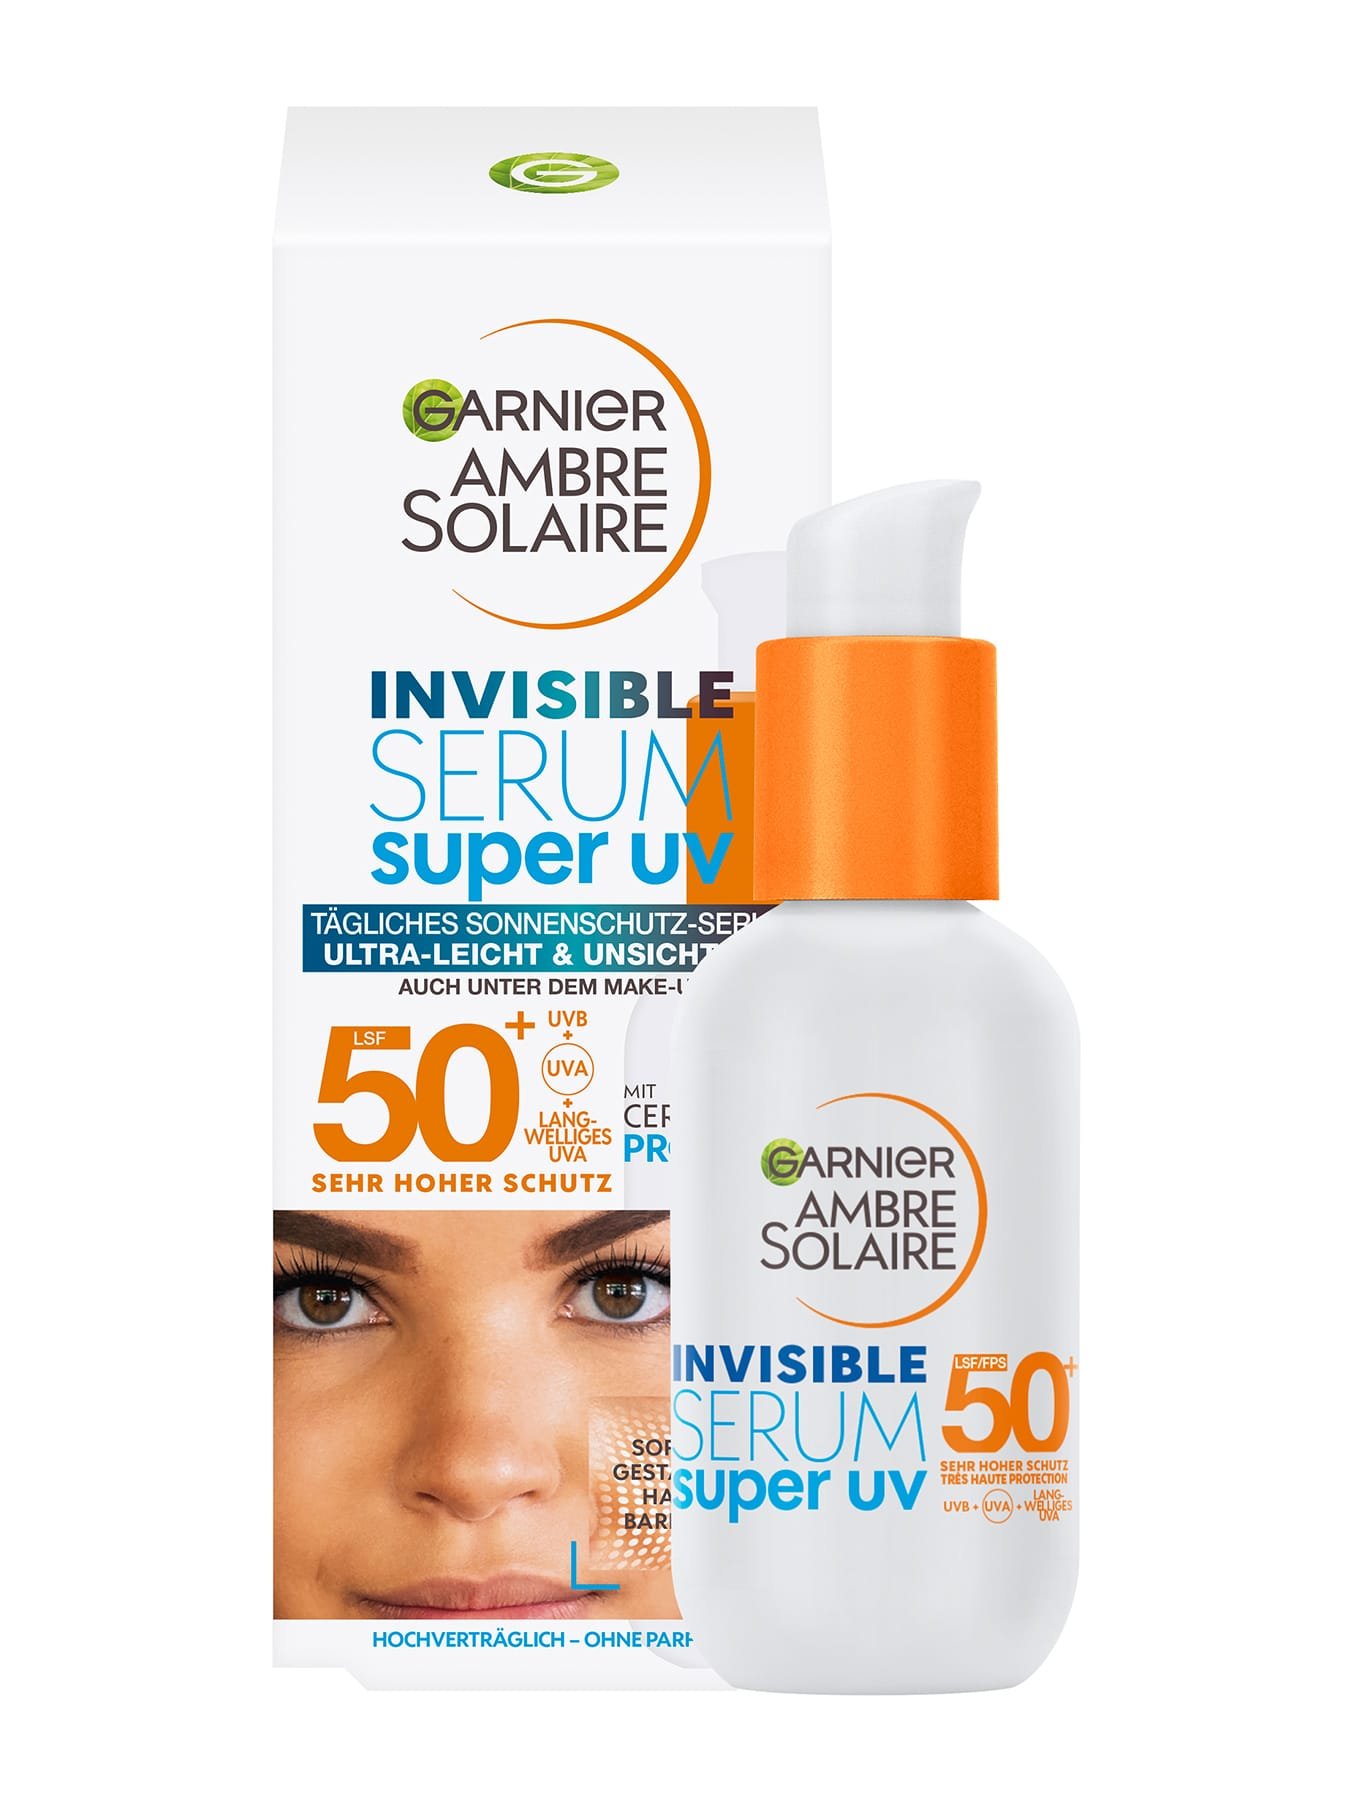 Invisible Serum Super UV Sonnenschutz-Serum LSF 50+ Produkt & Verpackung